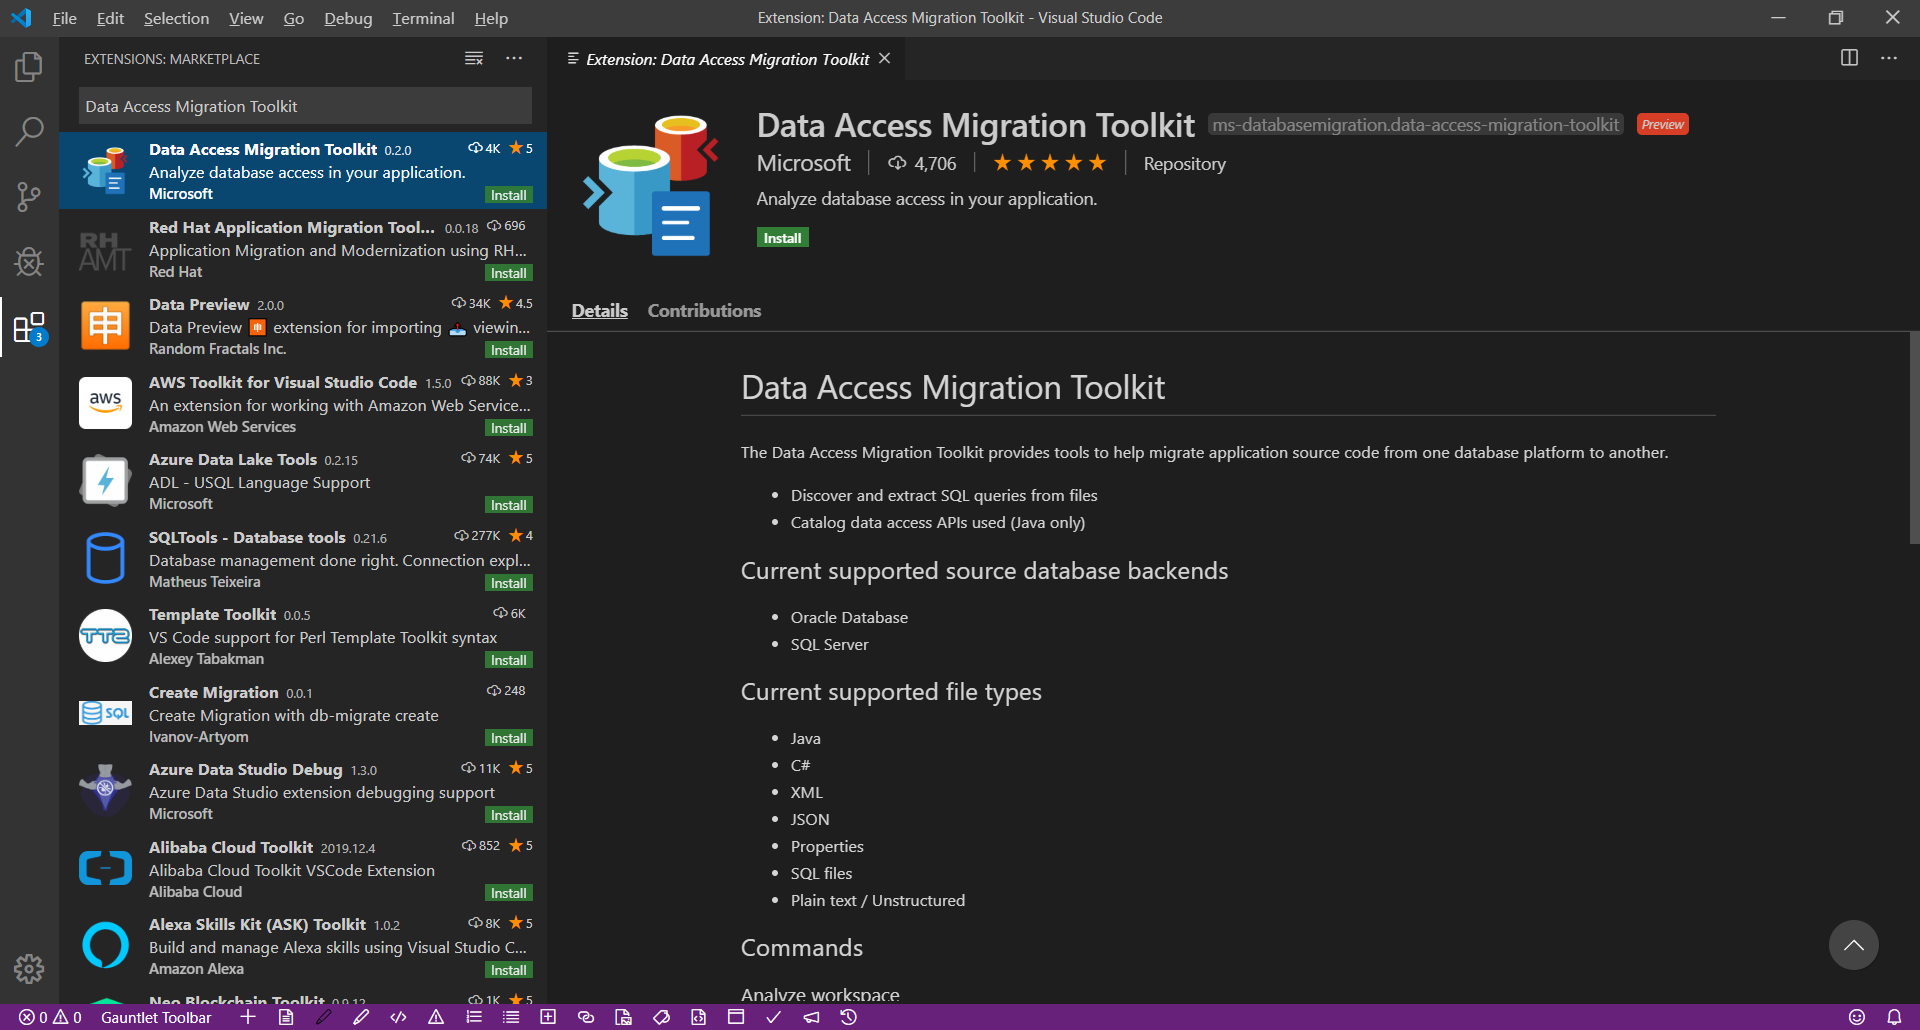 スクリーンショットには、Visual Studio Code の Data Access Migration Toolkit 拡張機能のページが示されています。